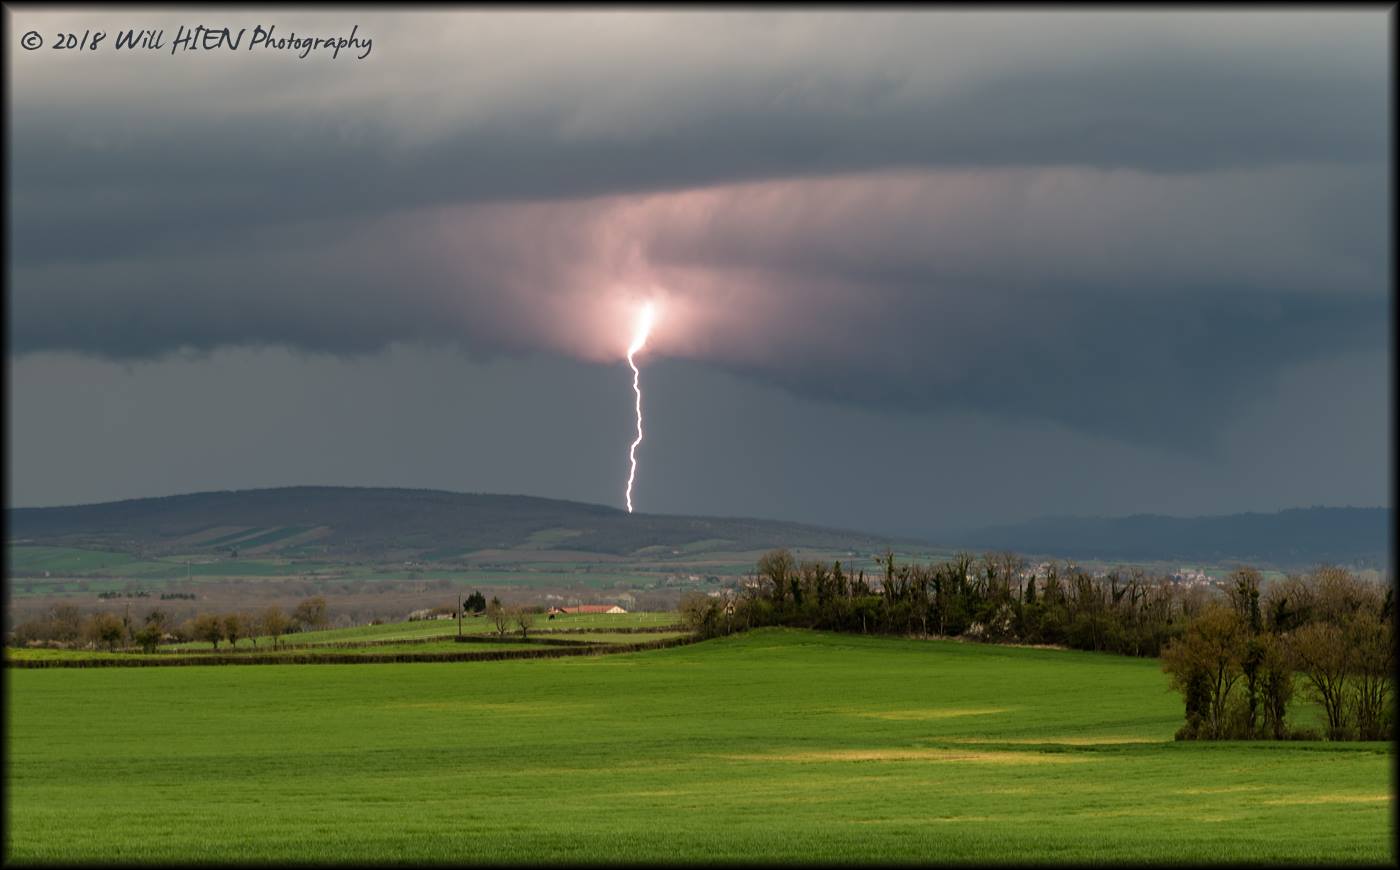 Formé sur le Nord-Beaujolais, un petit orage va remonter plein nord vers la Saône-et-Loire - 09/04/2018 19:00 - Will HIEN Photography